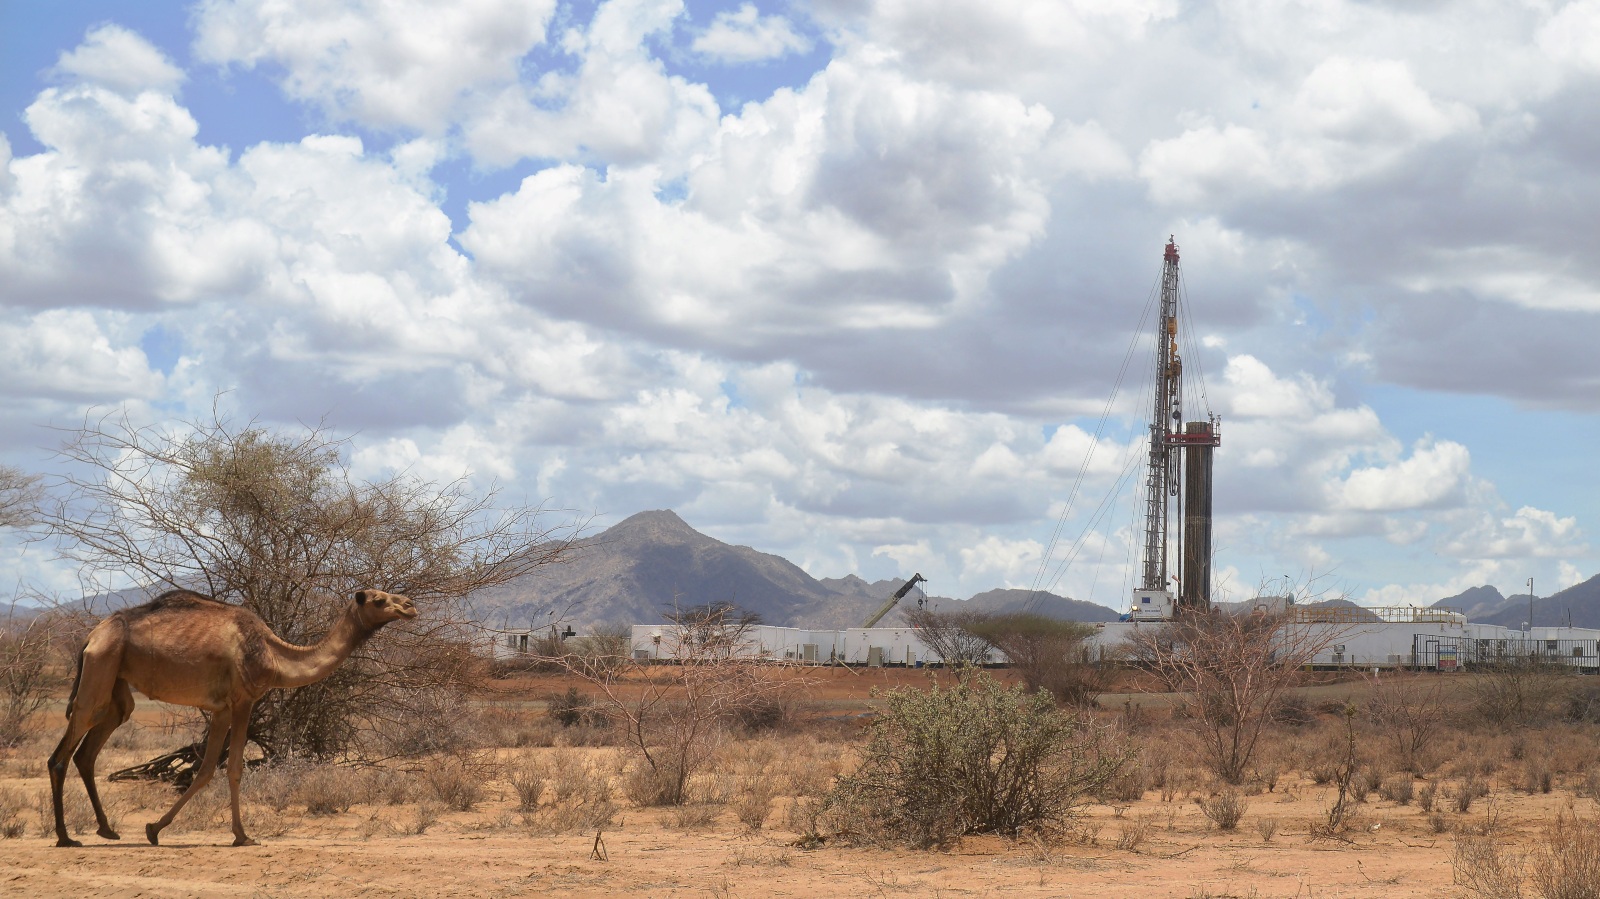 Kenya oil drilling